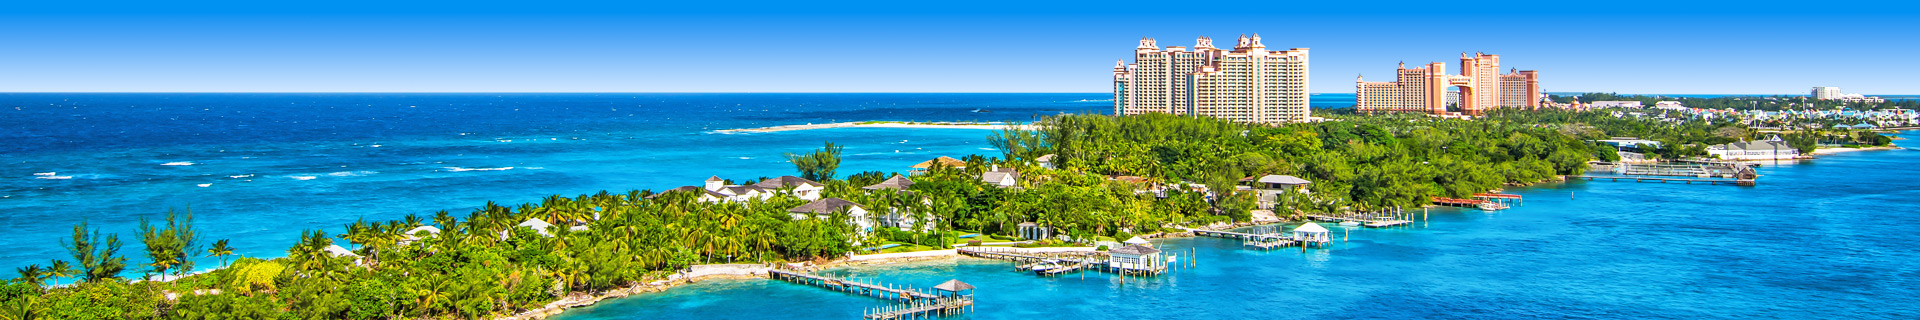 Resort op het witte zandstrand met blauwe zee op de Bahama's